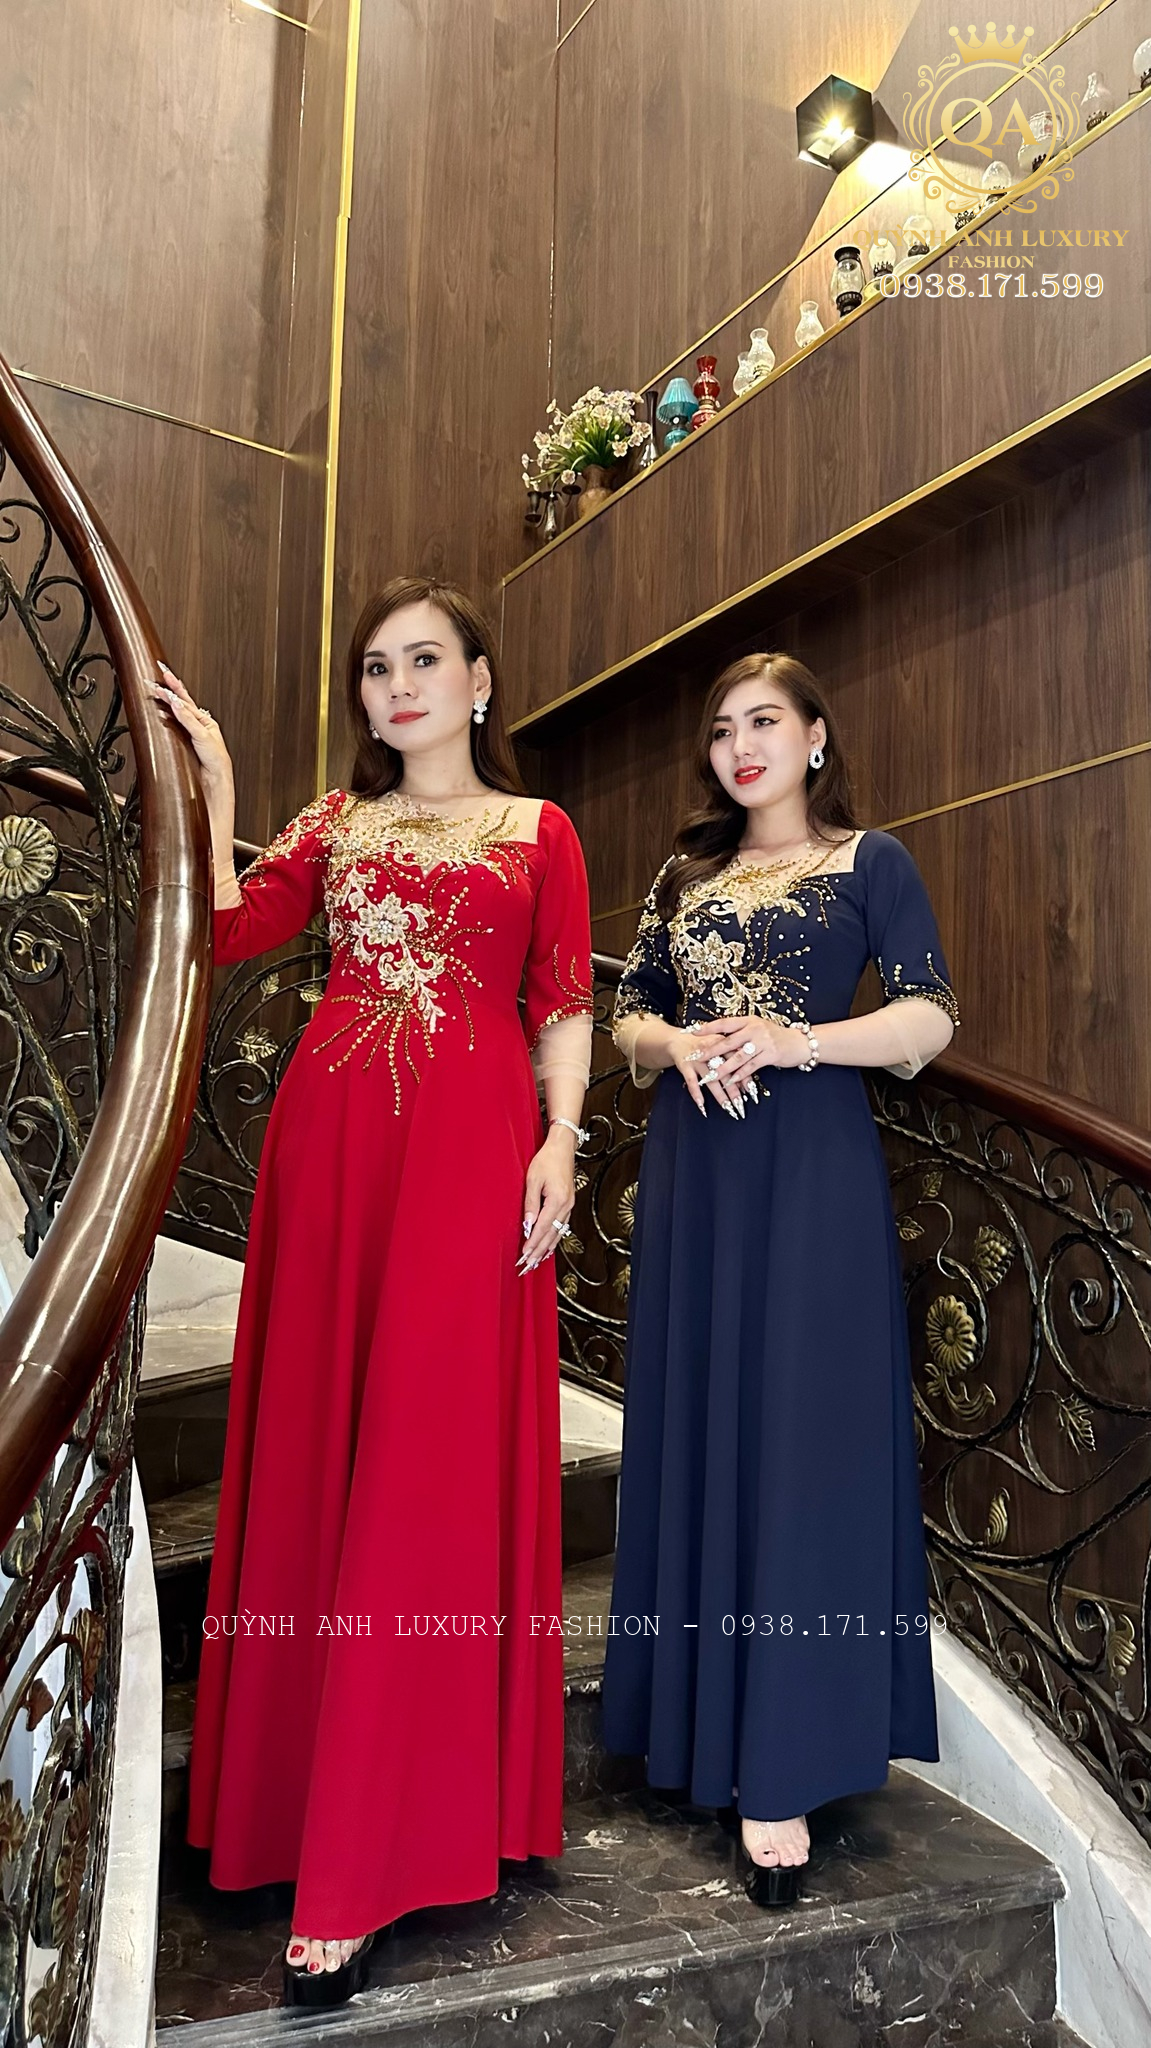 Các mẫu váy xoè đi tiệc trung niên cao cấp nhất của Quỳnh Anh Luxury